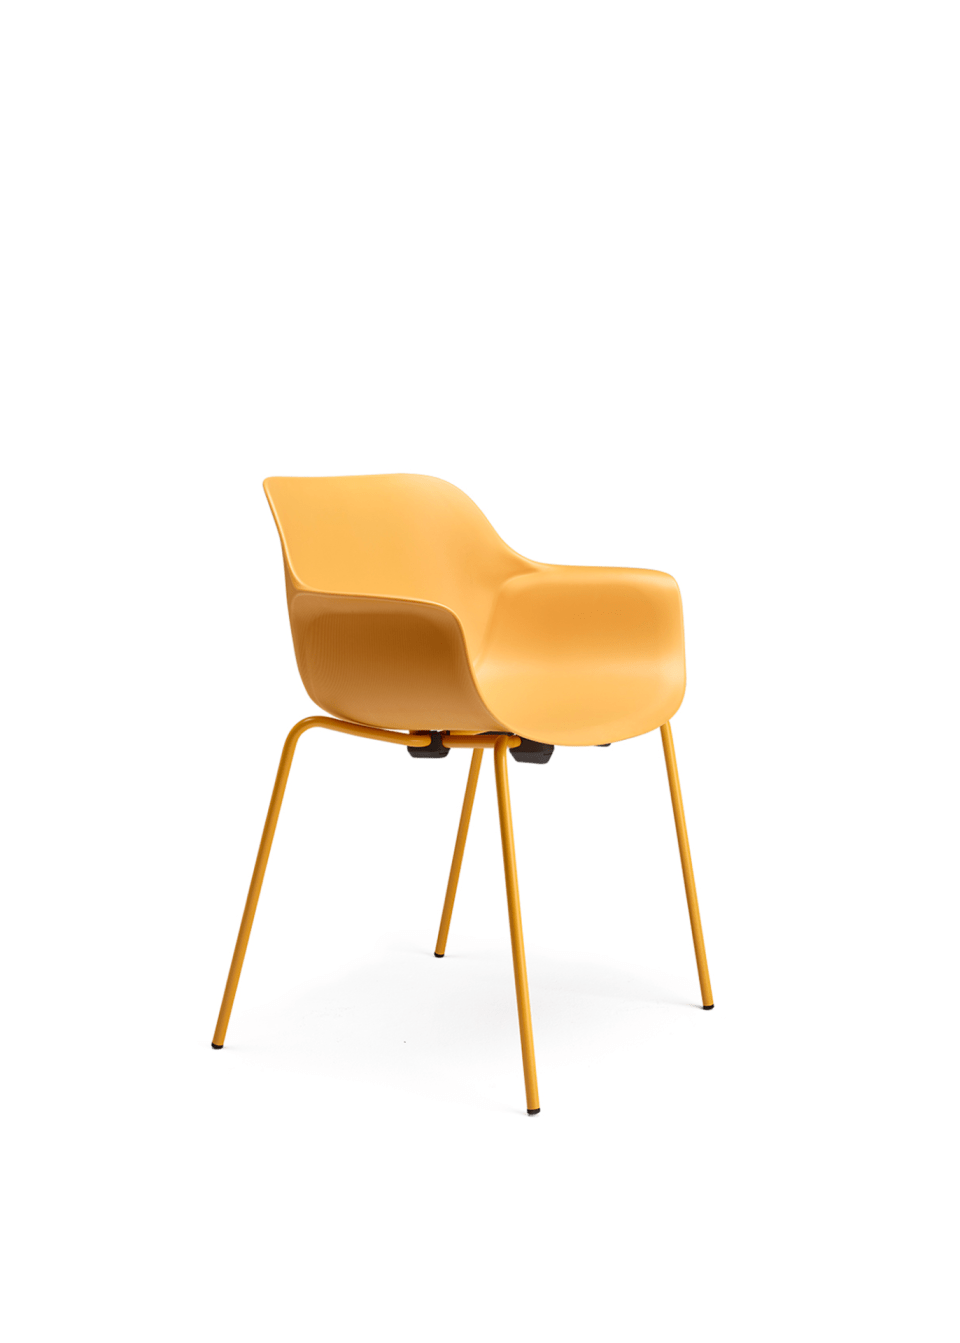 chaise de collectivité jaune, ou chaise de réunion jaune pour coworking en open space avec accoudoirs